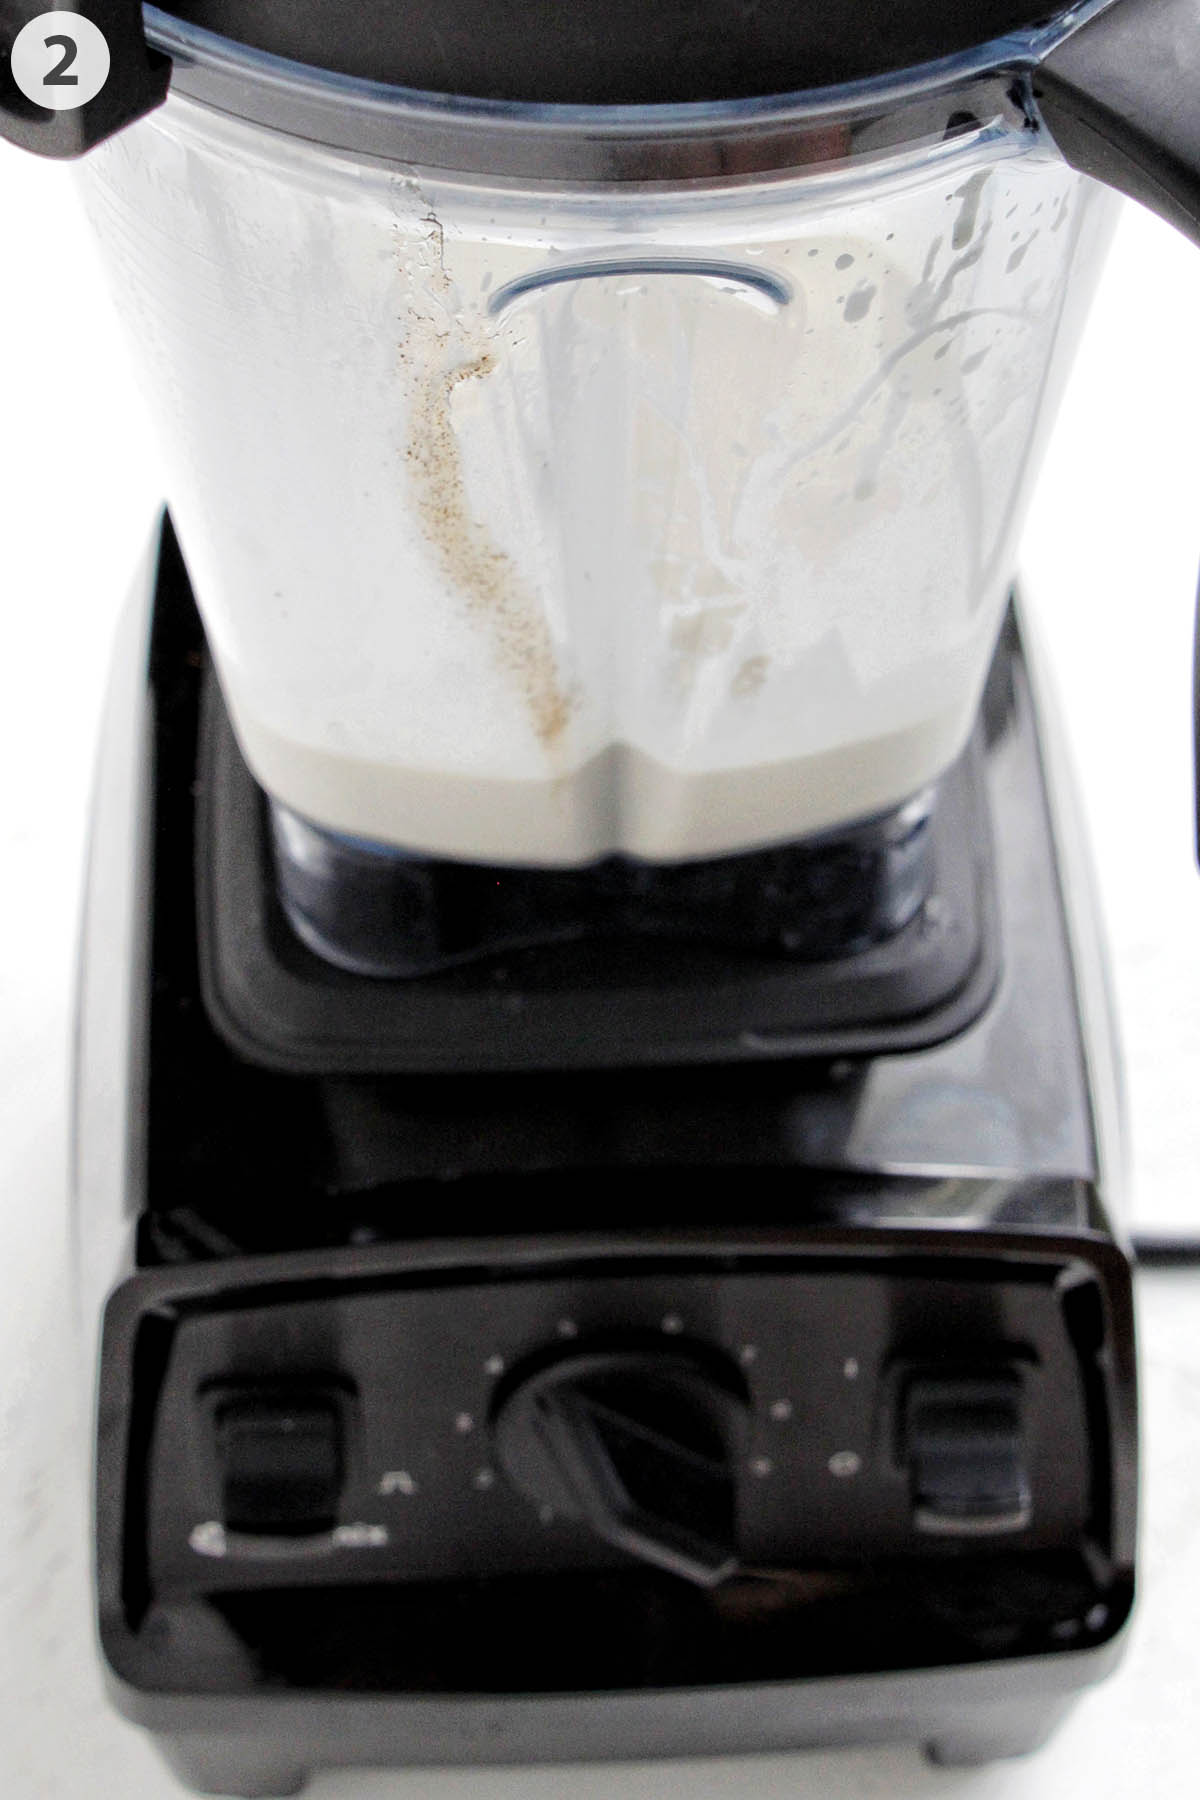 numbered photo blending milkshake in a blender.